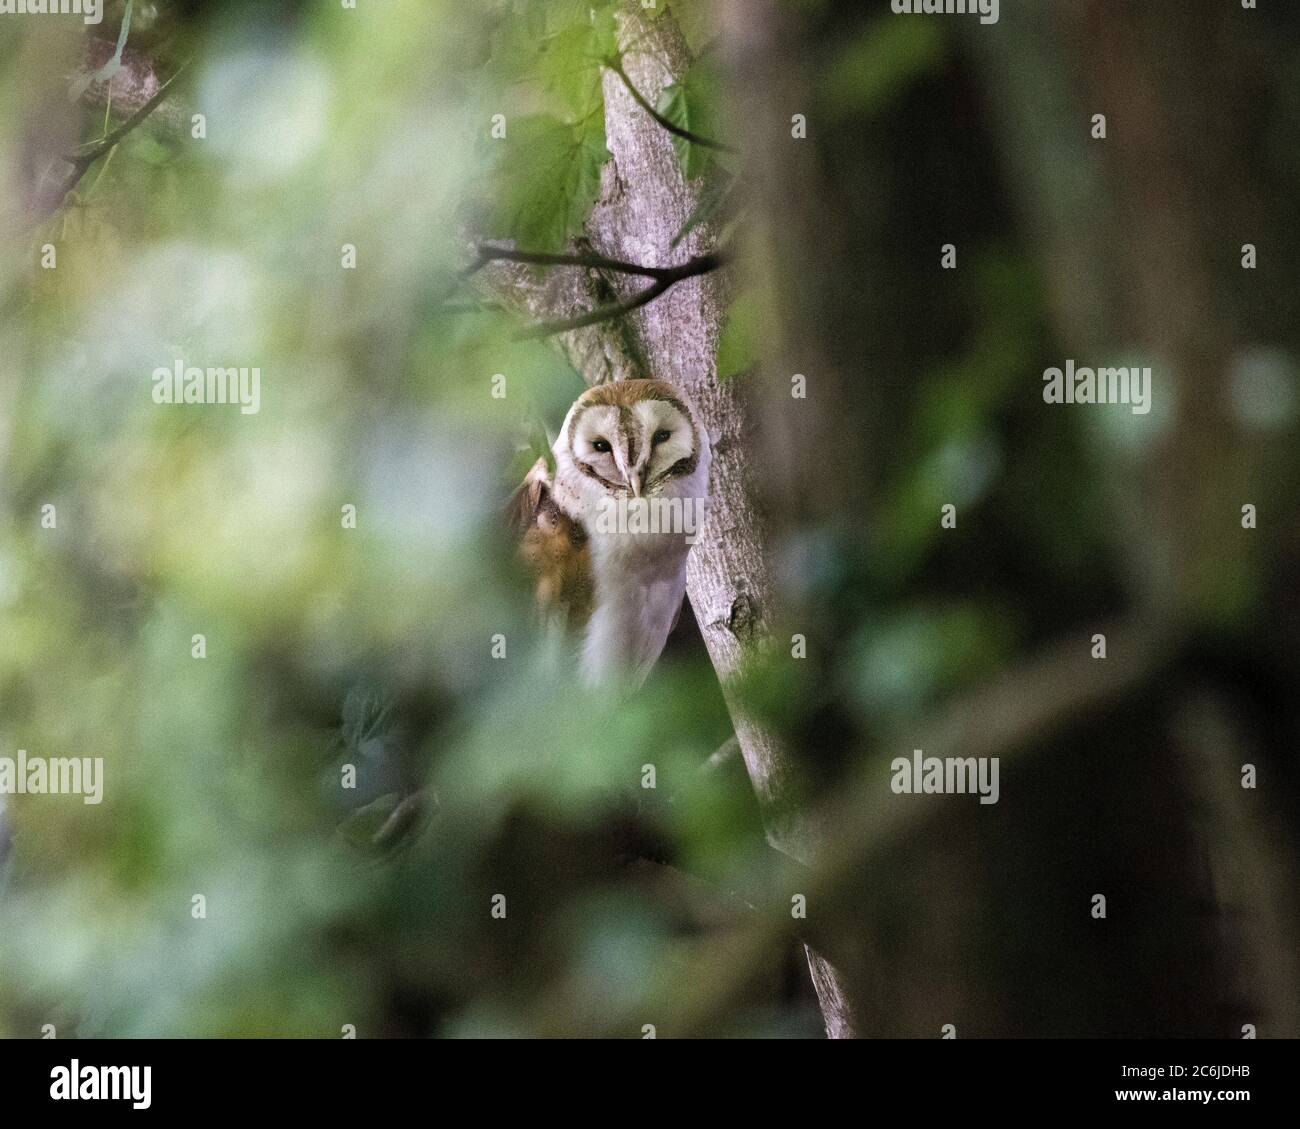 Scheune Owl mit herzförmigem Gesicht, Buff Rücken und Flügeln und rein weißen Unterteilen, ist die Scheune Owl ein unverwechselbarer und viel geliebter Landvogel. Stockfoto